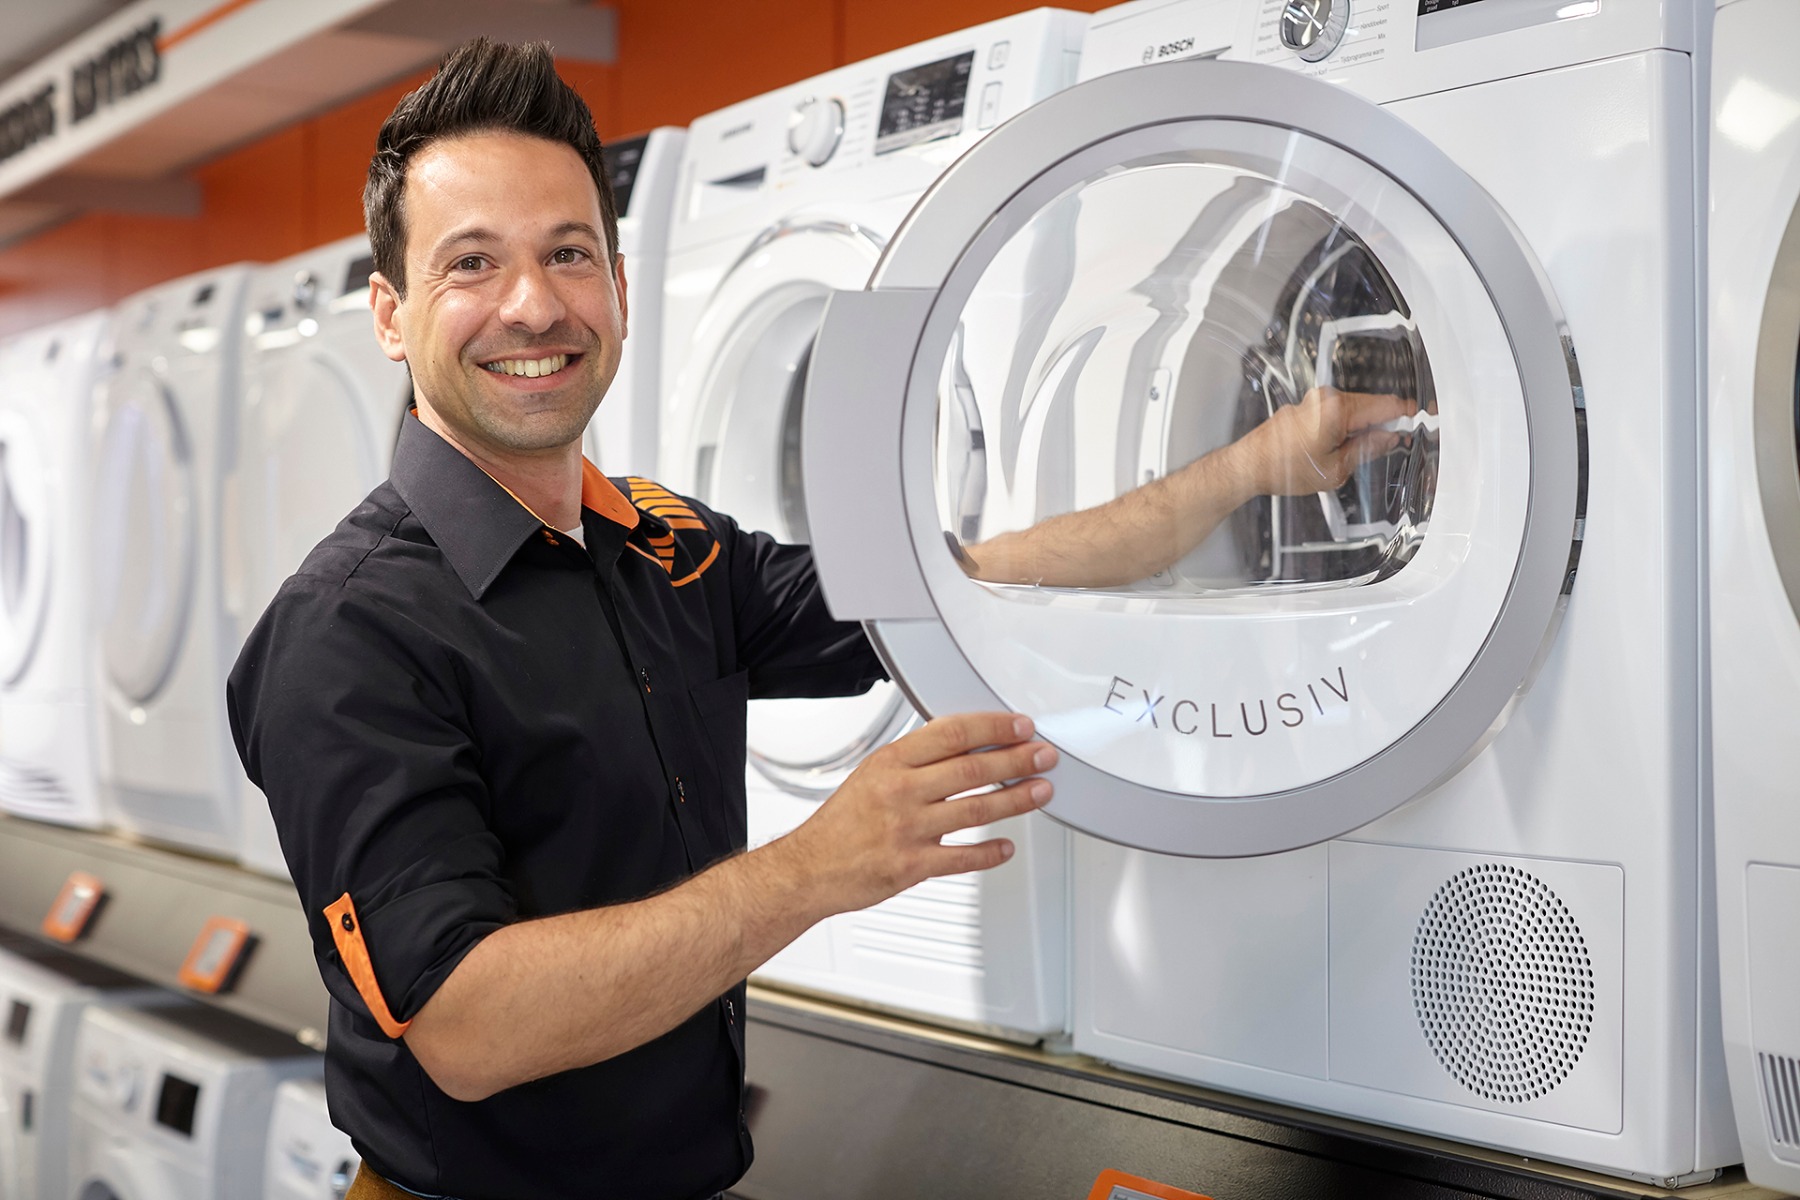 Piket Cadeau Inspiratie Hoe plaats je een droger op een wasmachine? | Expert.nl